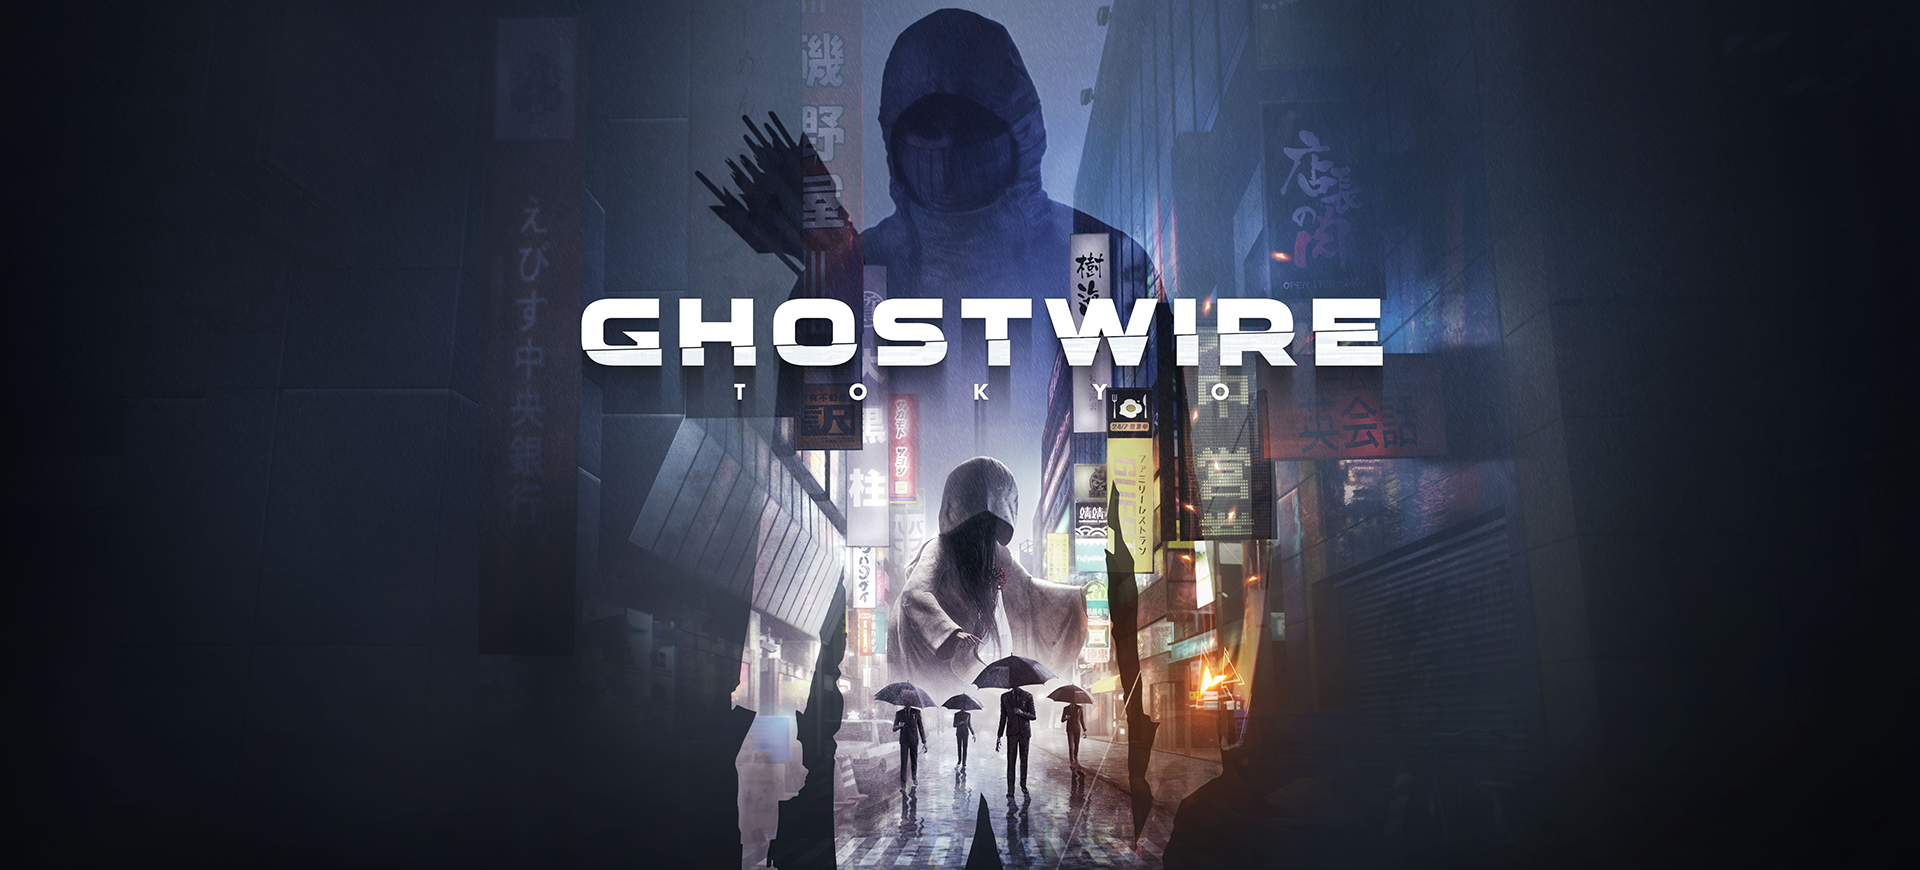 ghostwire: tokyo geliştiricisi, evil within 2 yönetmeniyle yeni projesini açıkladı